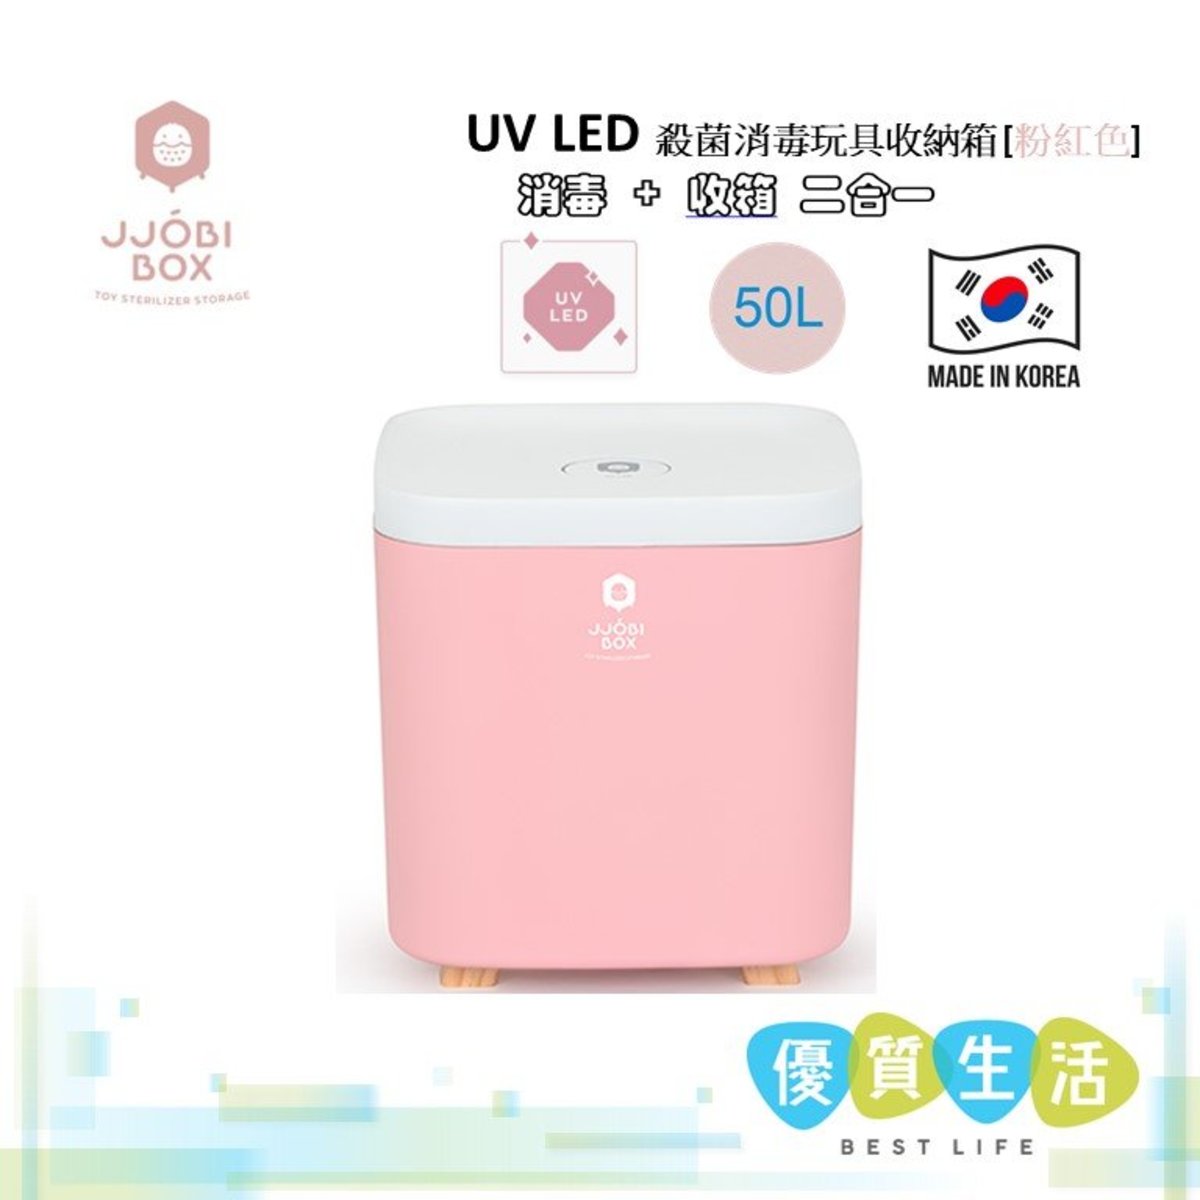 [専門店] UV LED 殺菌消毒玩具收納箱 [粉紅色] 韓國製造 (香港行貨)